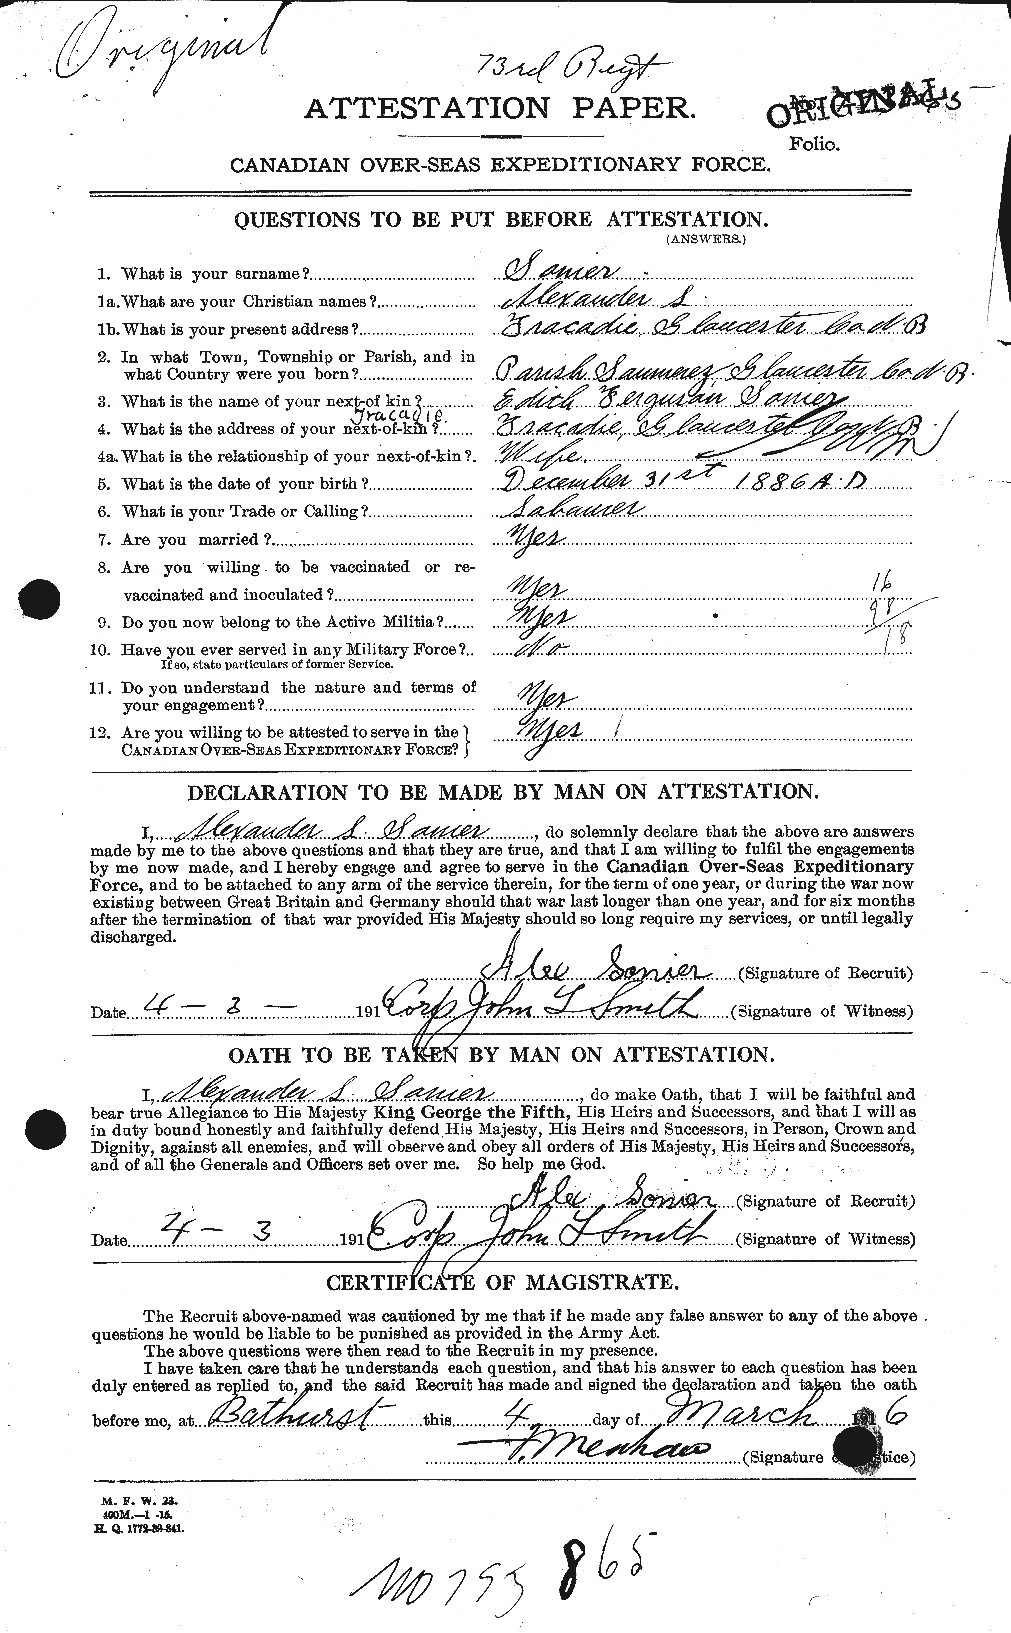 Dossiers du Personnel de la Première Guerre mondiale - CEC 111043a